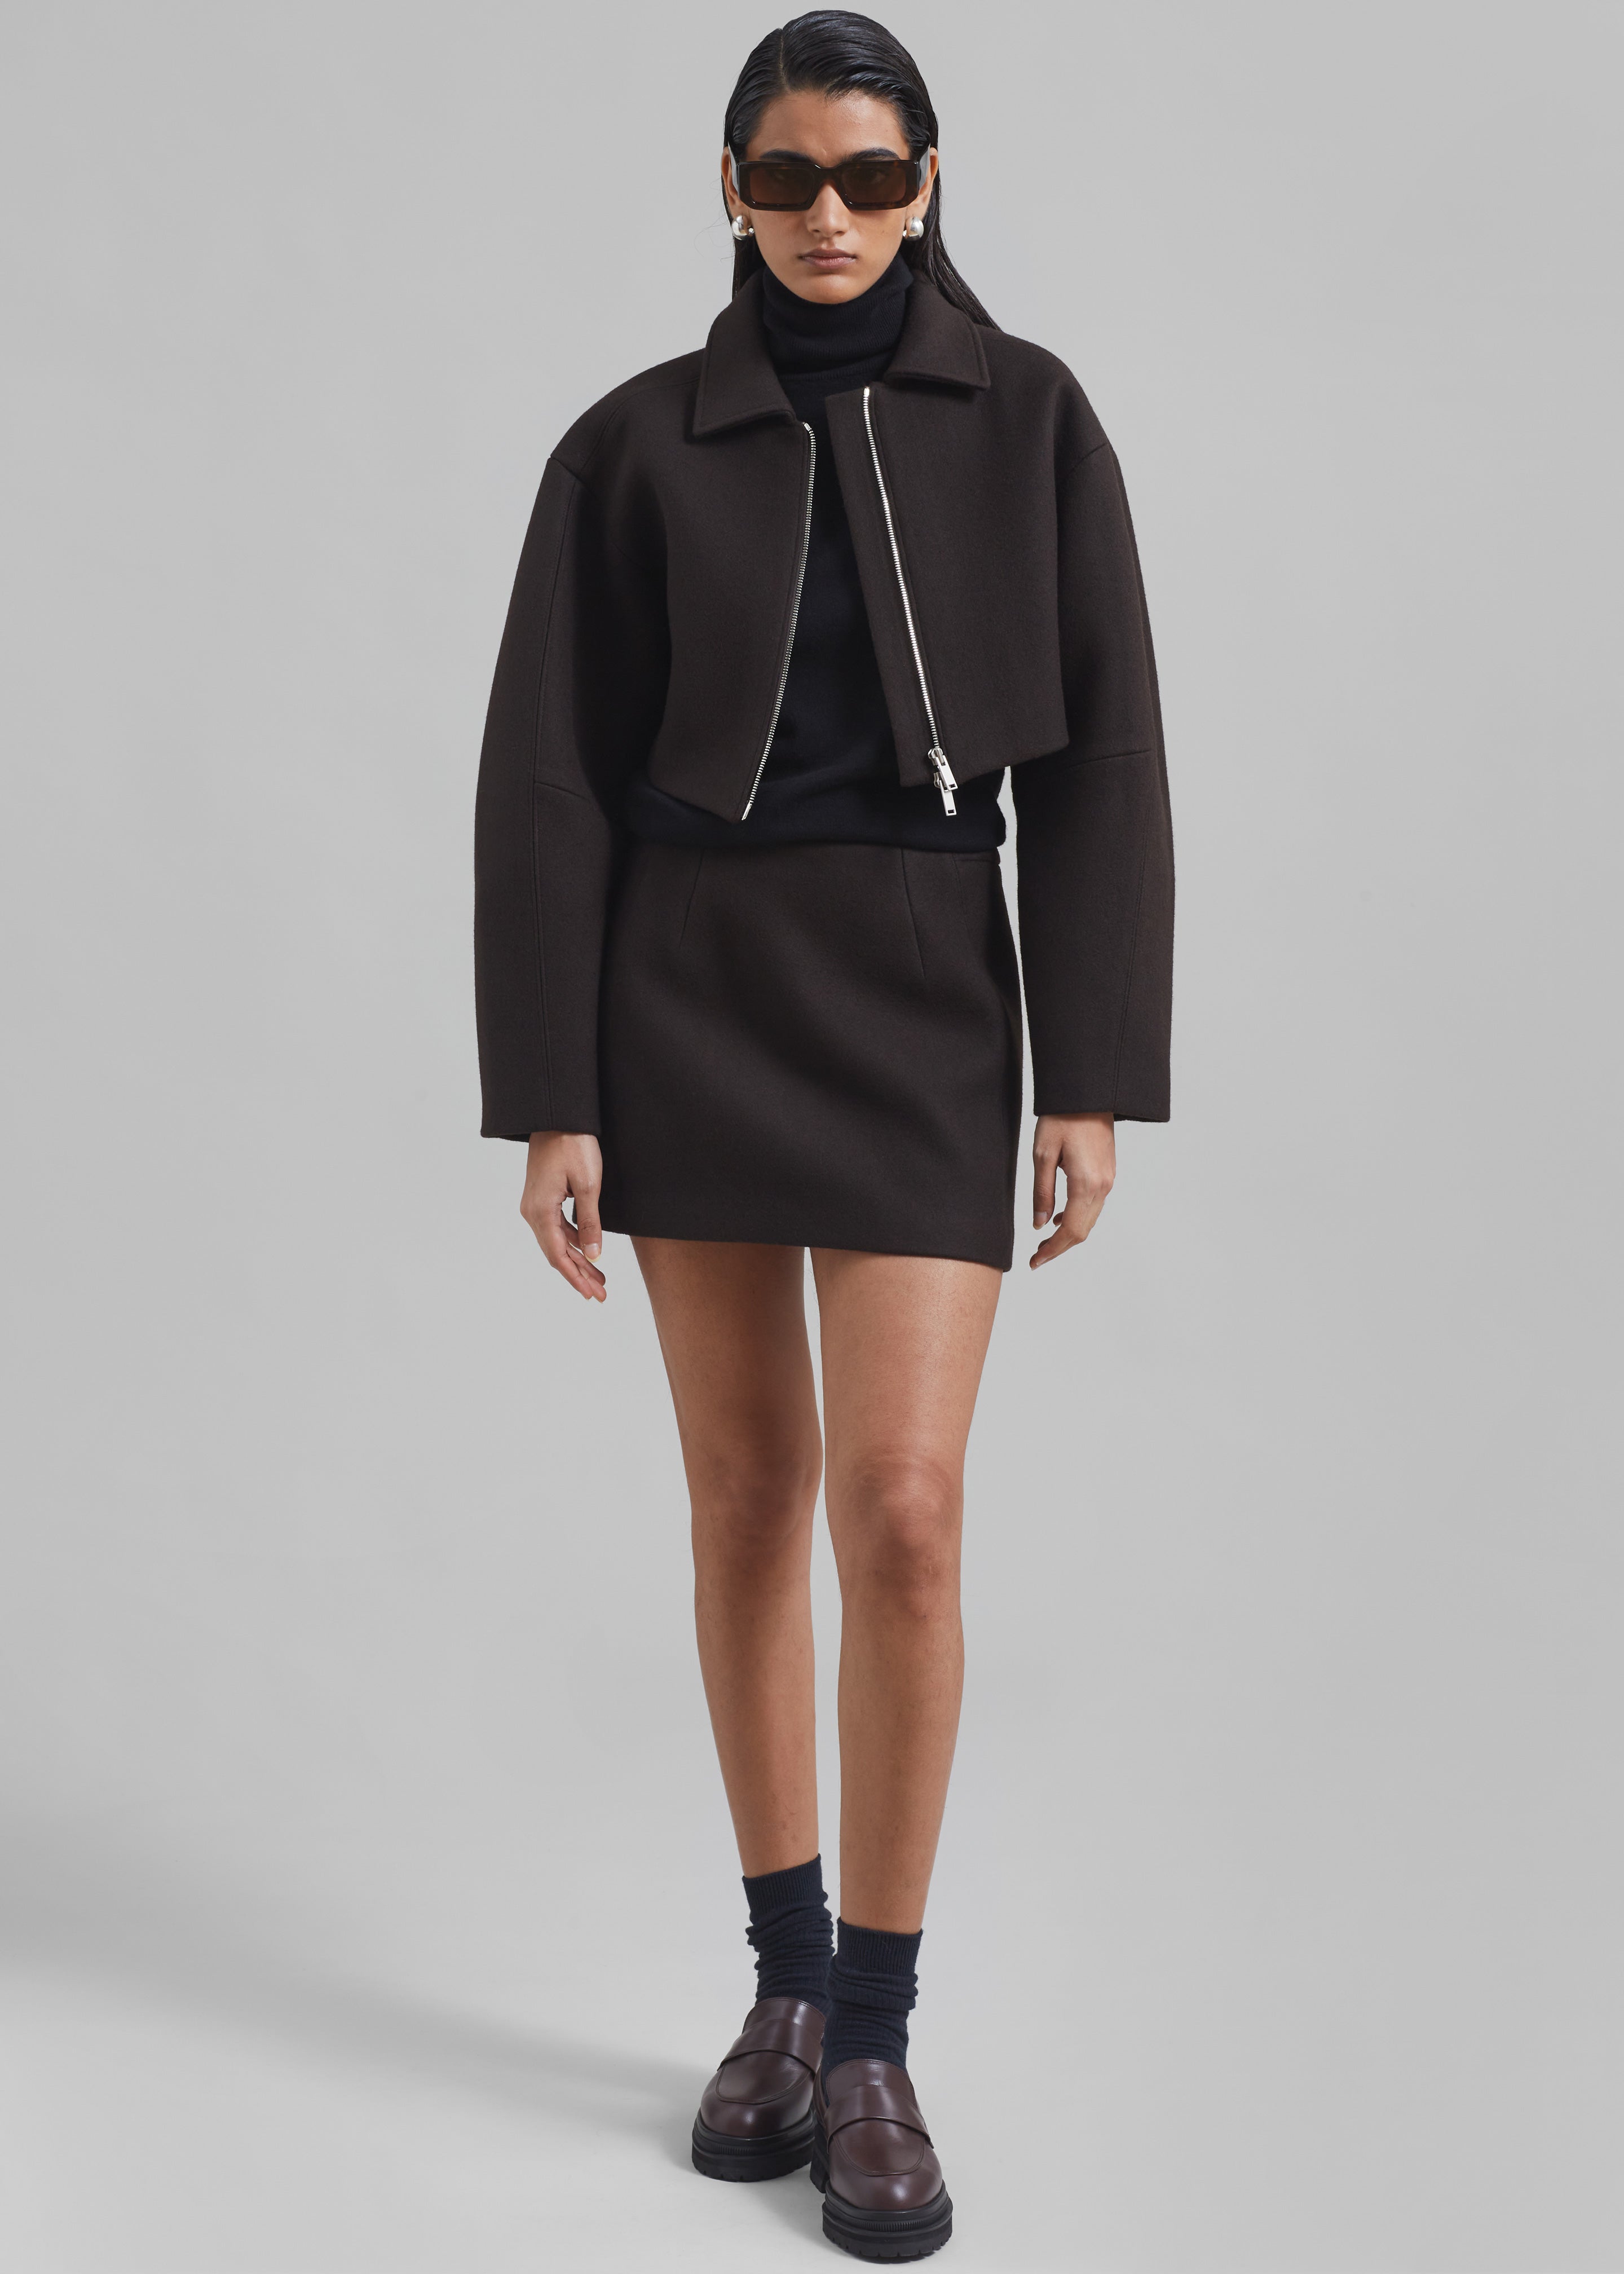 Kerrigan Wool Mini Skirt - Brown - 10